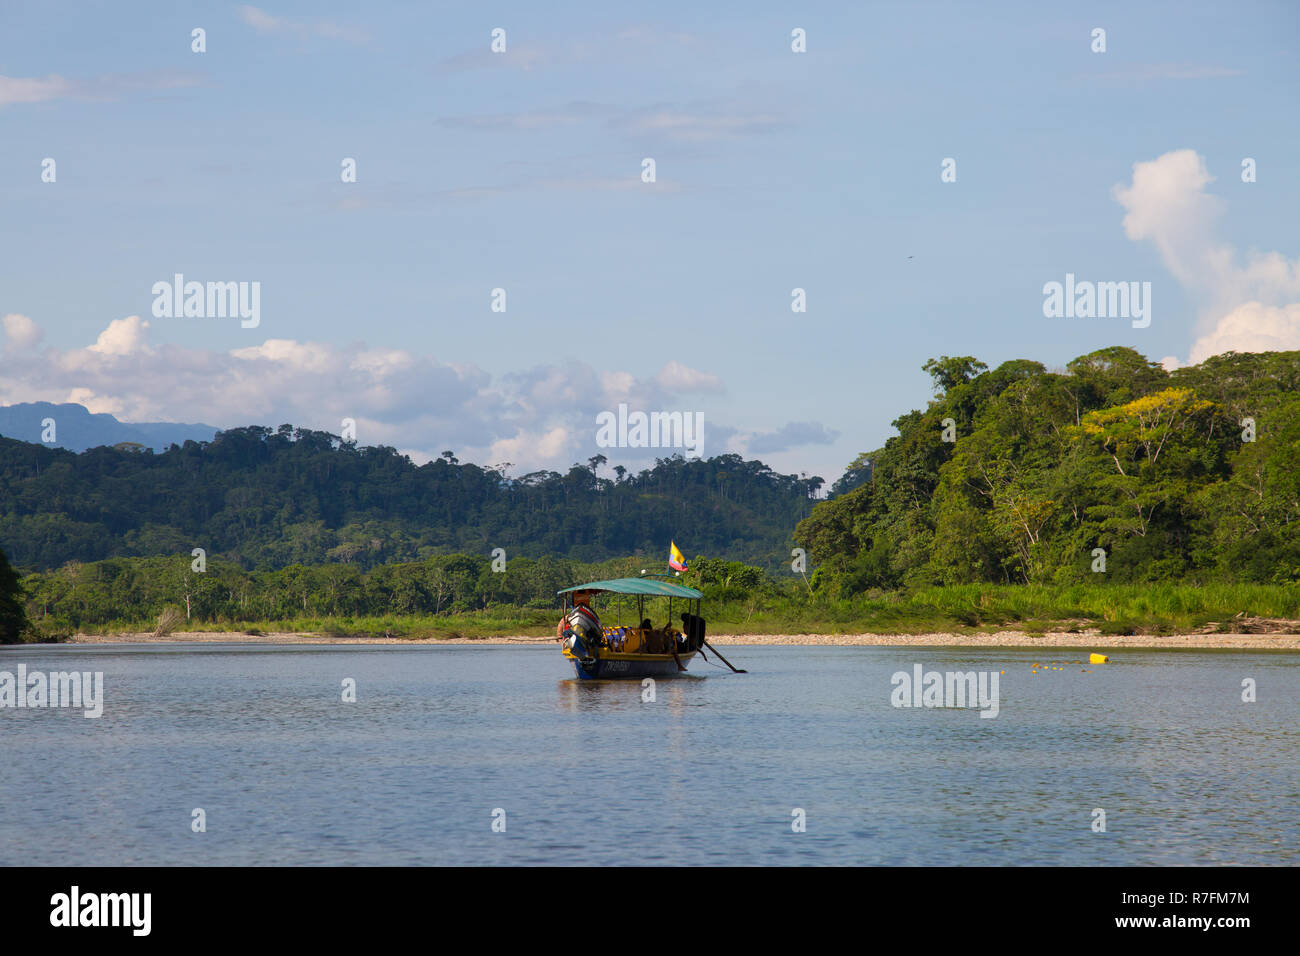 River flowing through the Amazon jungle, Ecuador, 2018 Stock Photo